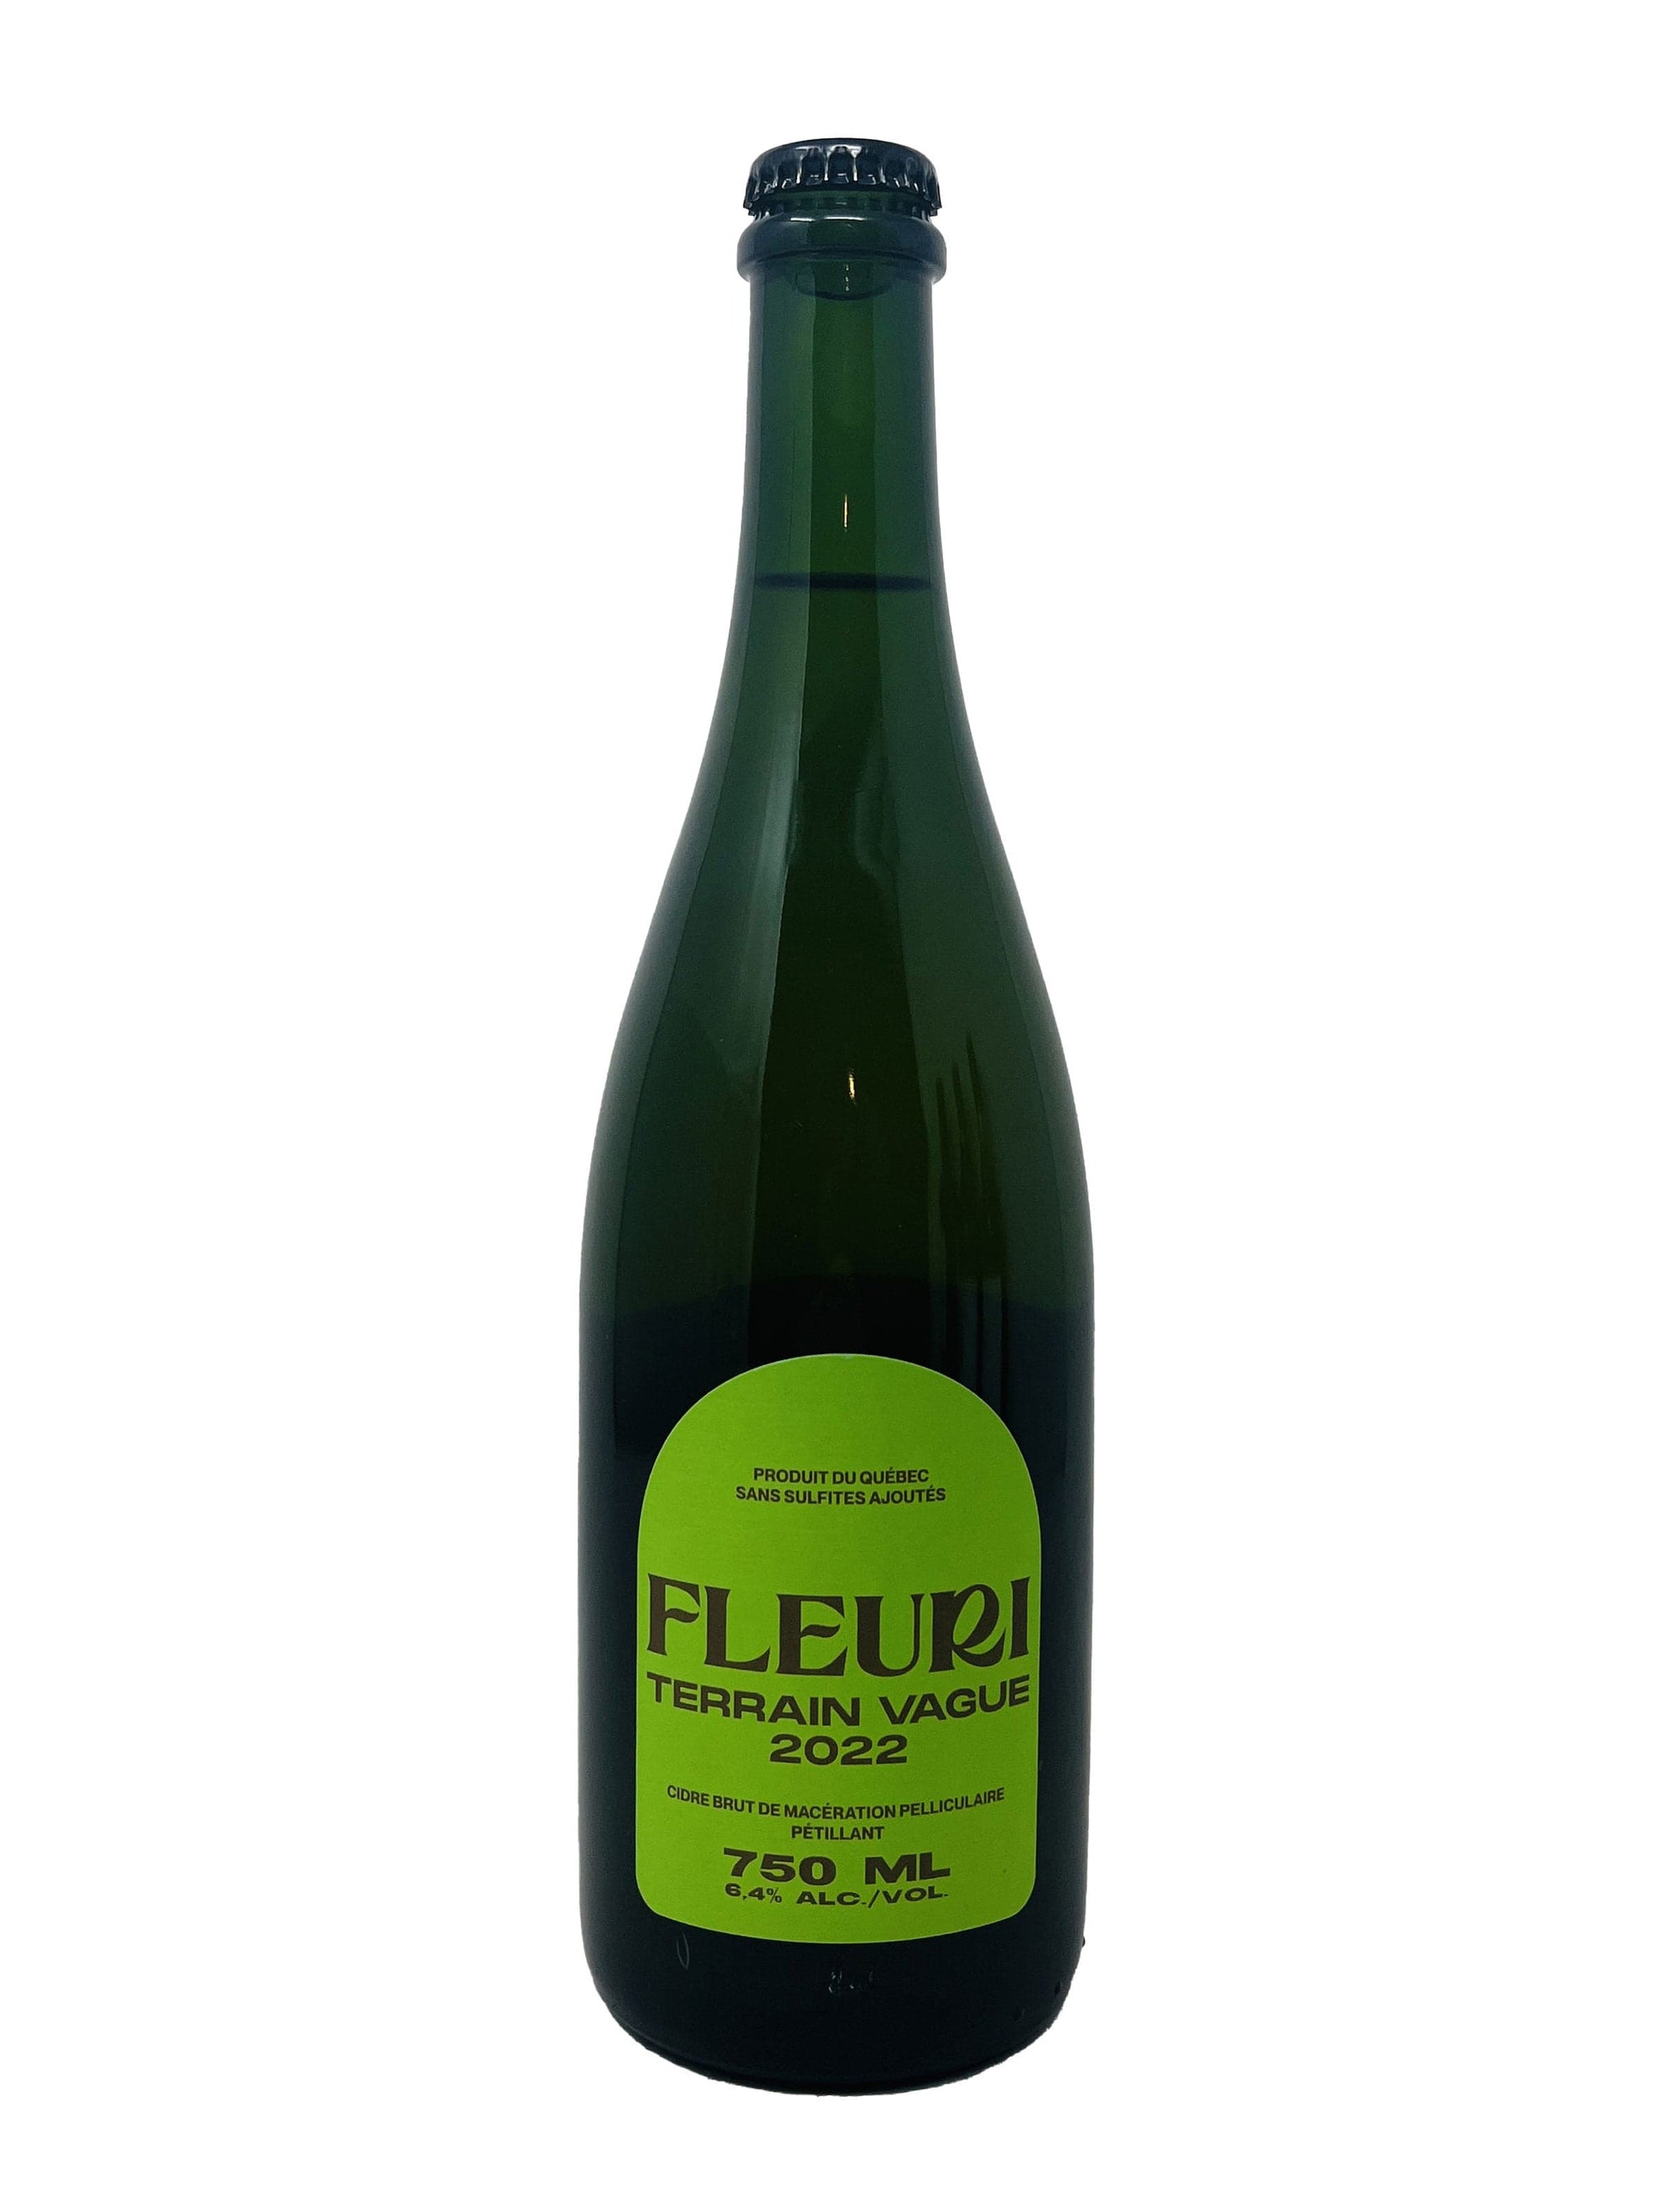 Cidrerie Fleuri Terrain vague - Cidre brut pétillant de macération pelliculaire de chez Fleuri Cidres biologiques